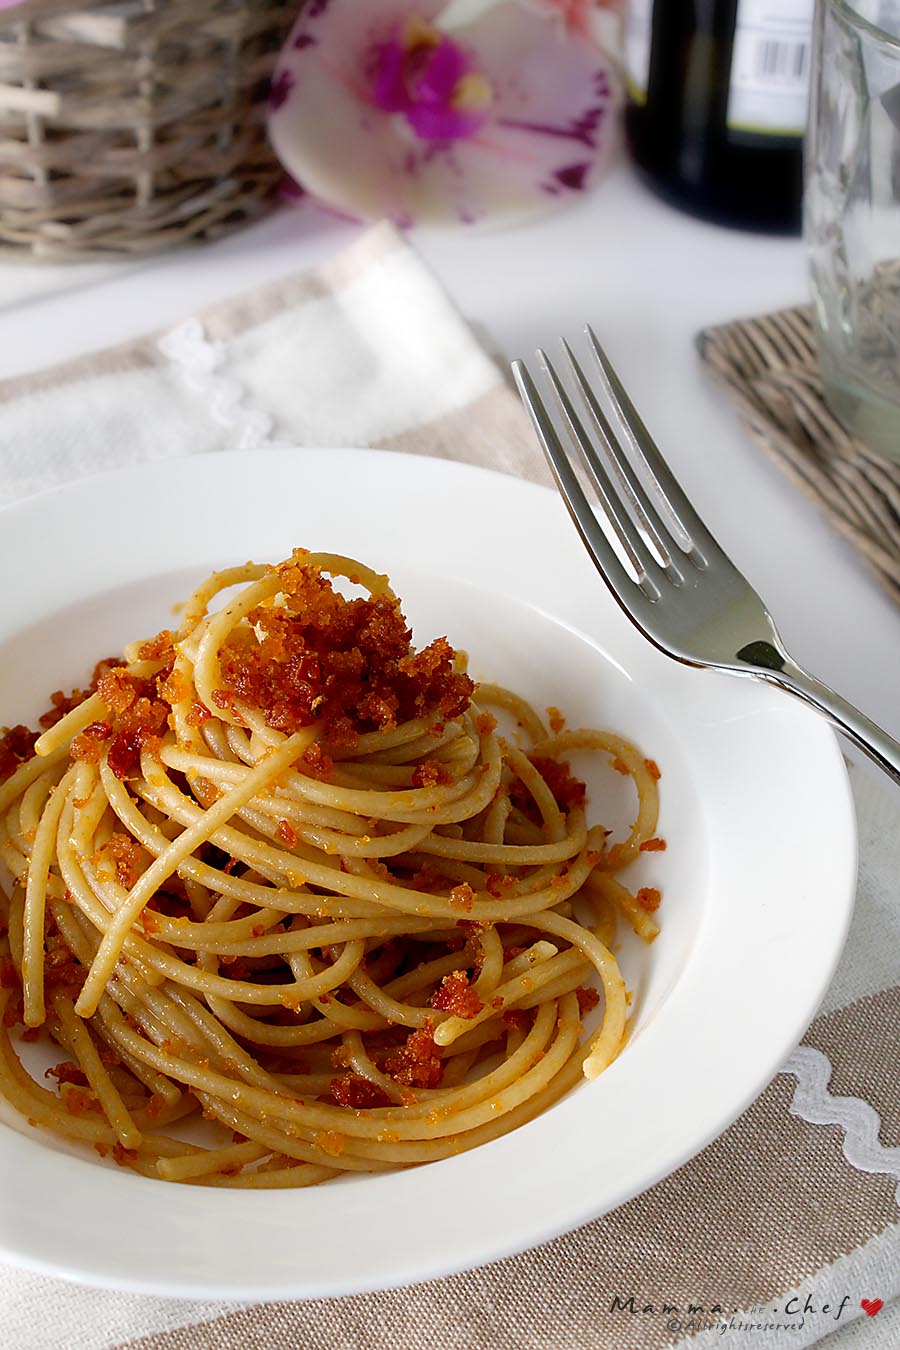 Spaghetti con mollica di pane e pomodori secchi